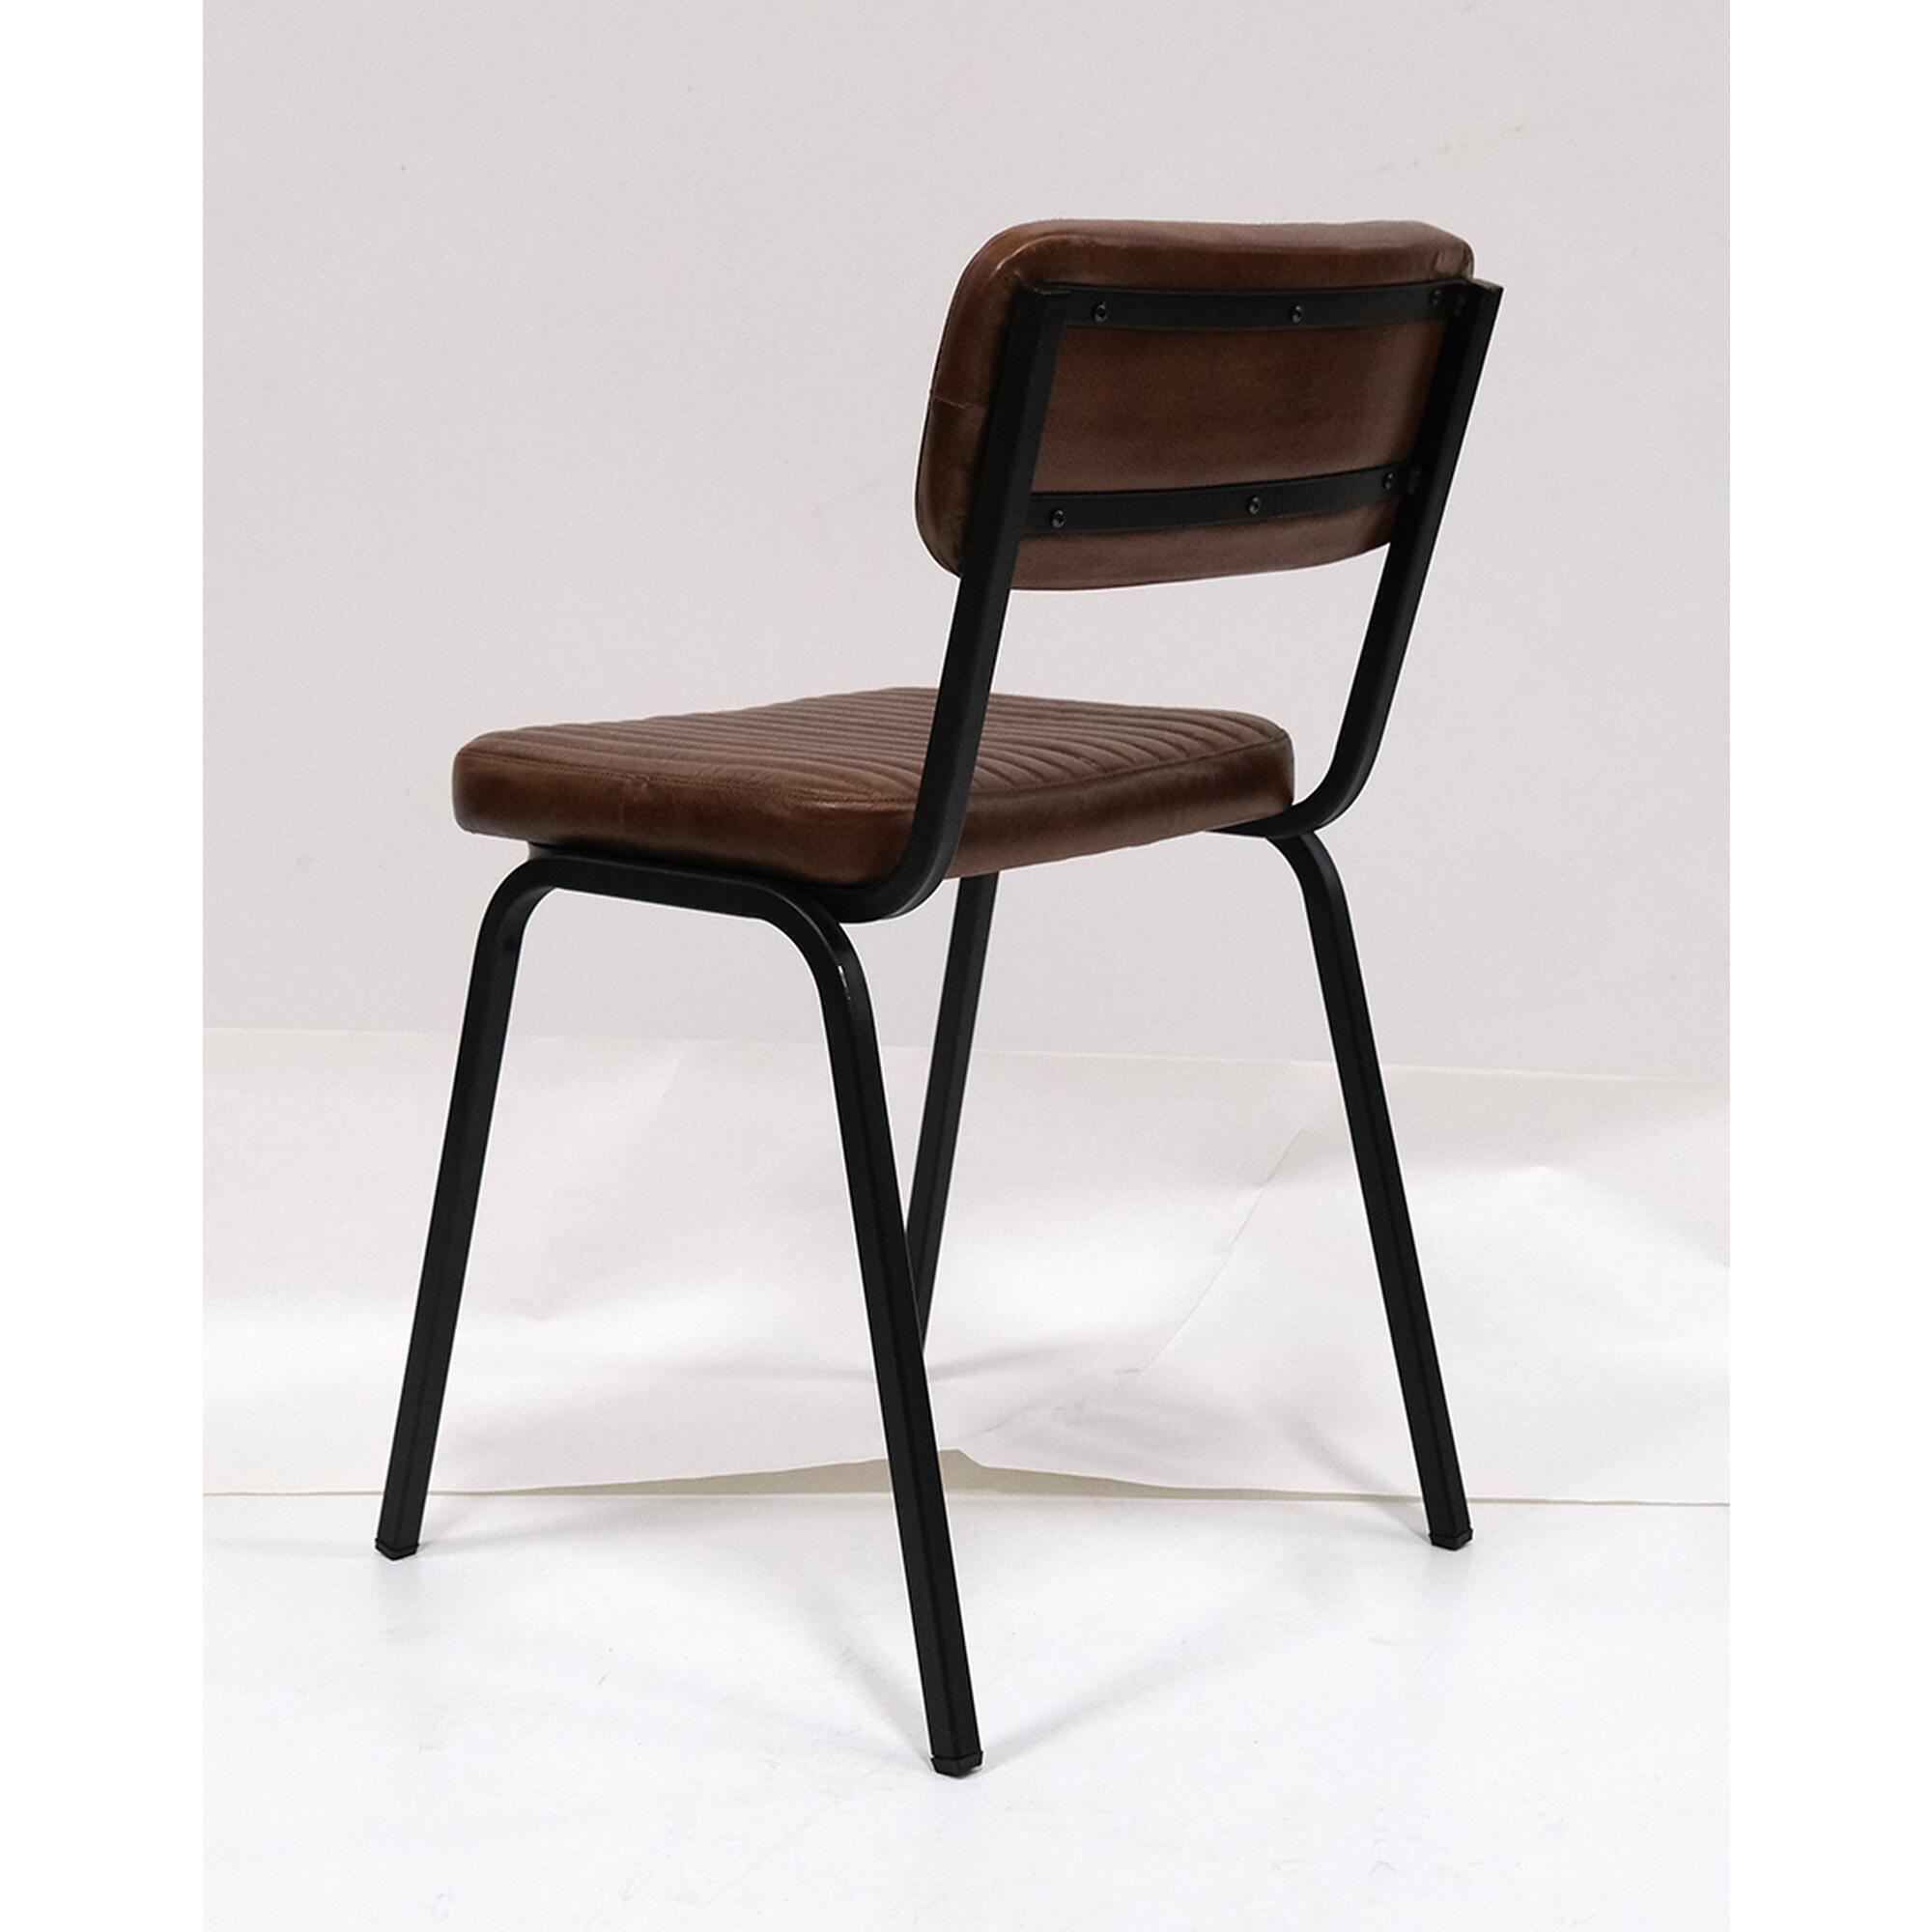  Diner stol - quiltet læder - mørkebrun fra Trademark Living i Jern (Varenr: MA0130)